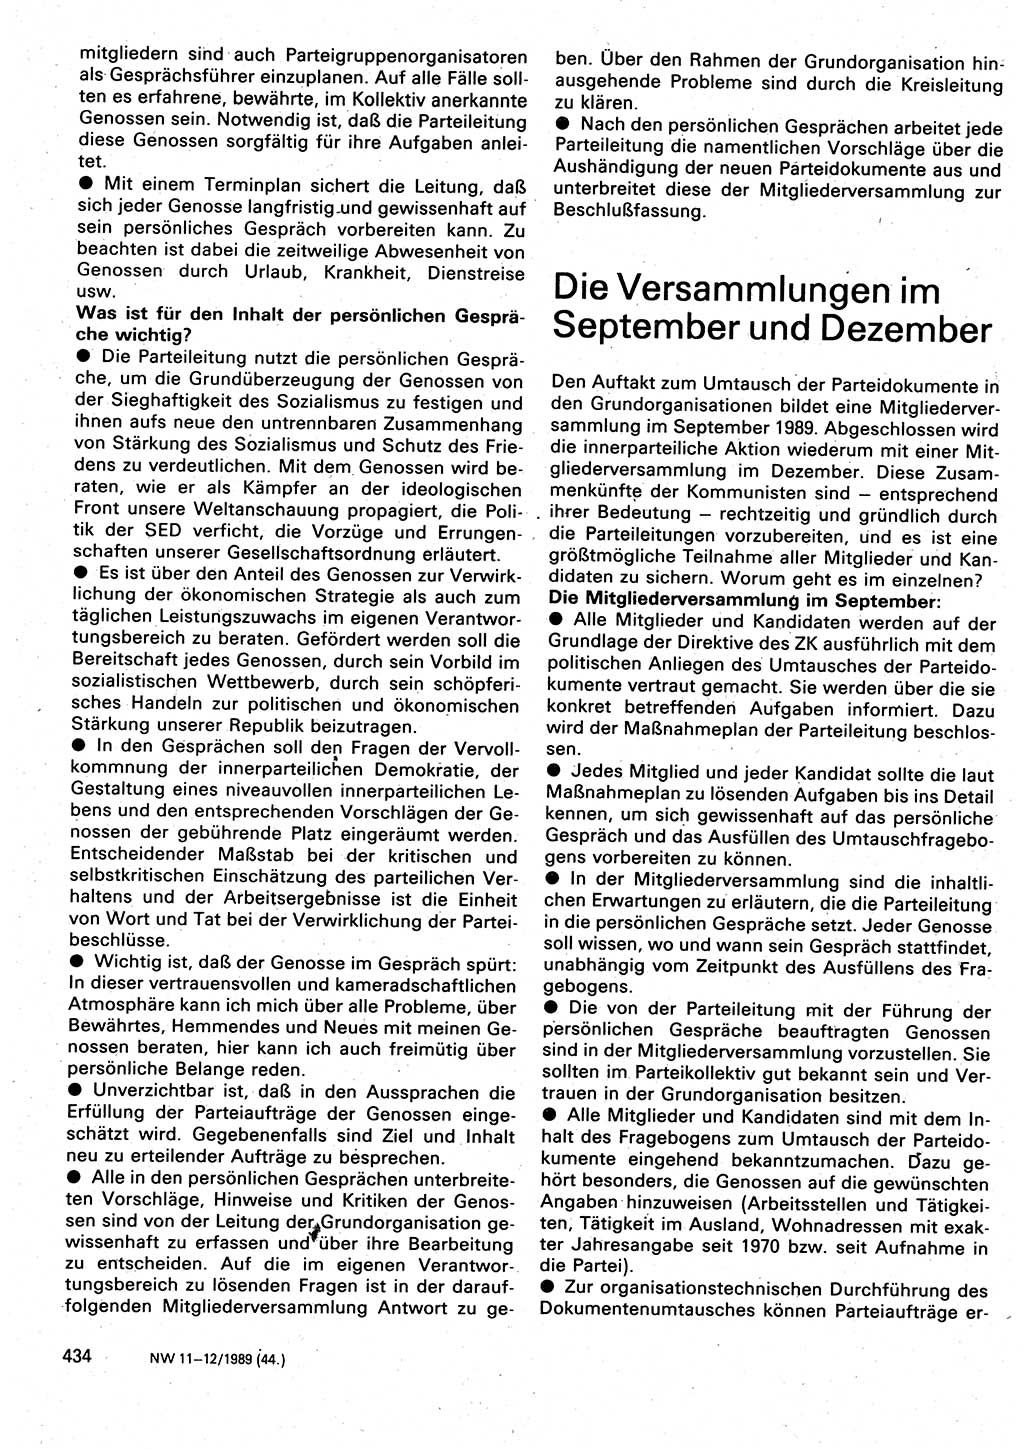 Neuer Weg (NW), Organ des Zentralkomitees (ZK) der SED (Sozialistische Einheitspartei Deutschlands) für Fragen des Parteilebens, 44. Jahrgang [Deutsche Demokratische Republik (DDR)] 1989, Seite 434 (NW ZK SED DDR 1989, S. 434)